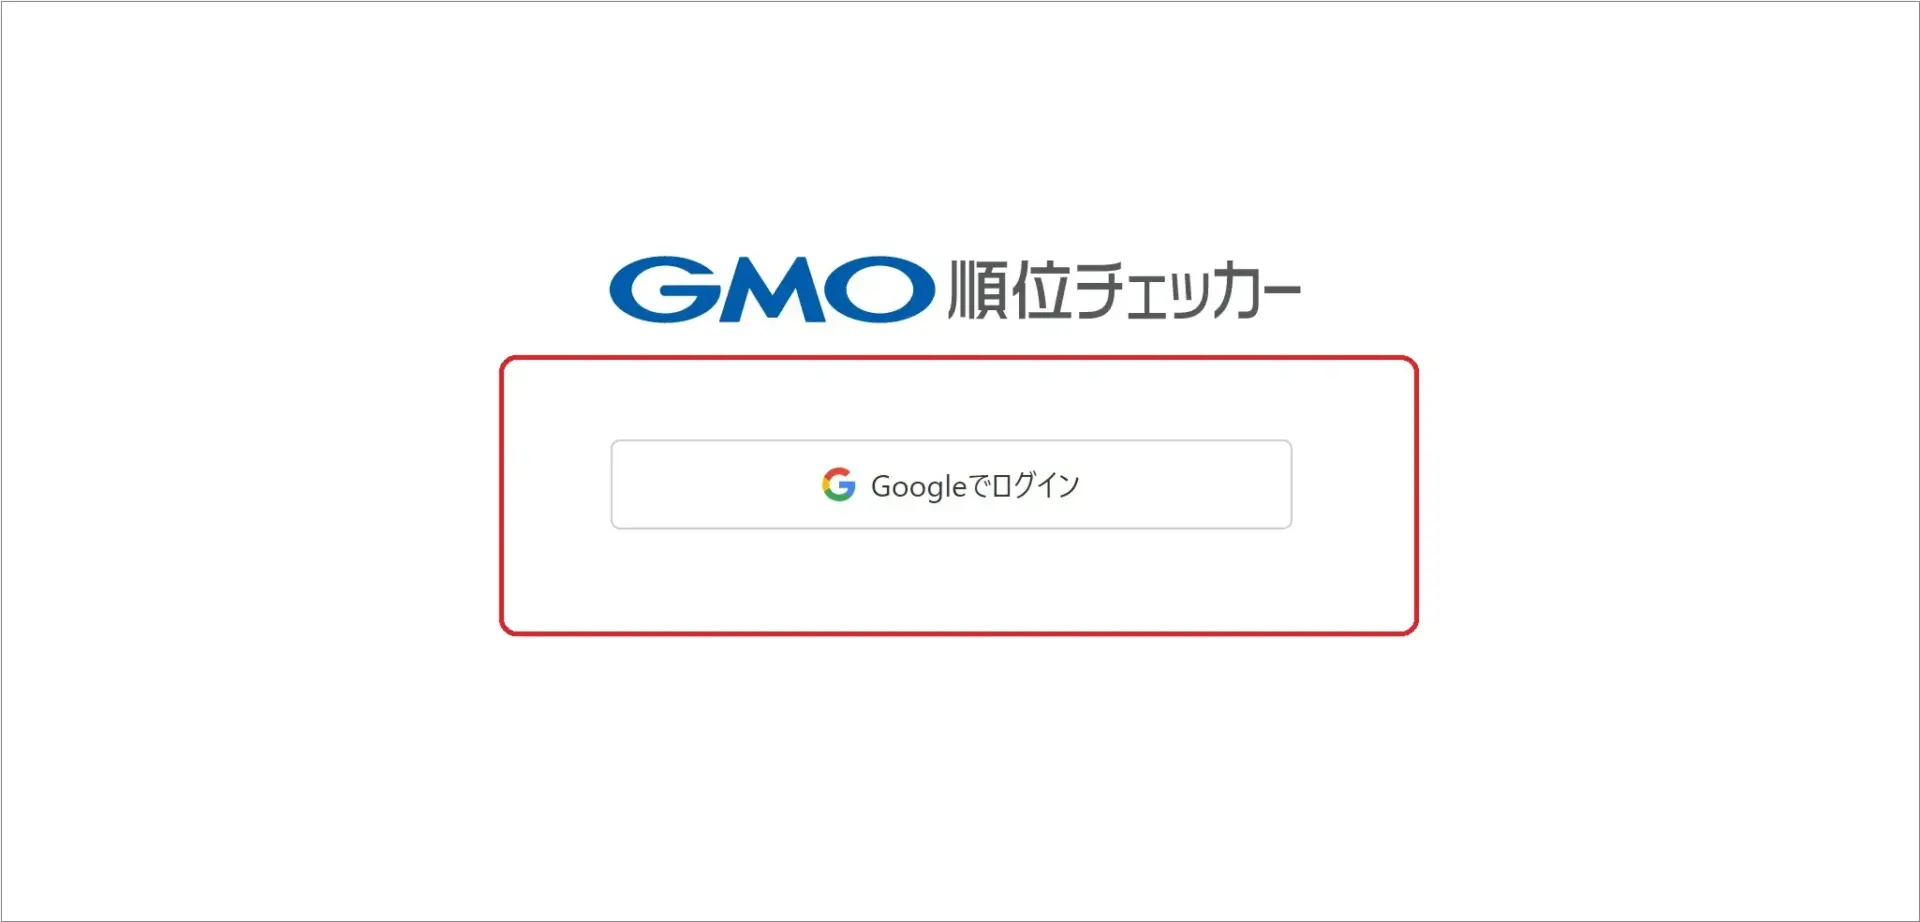 GMO順位チェッカーはGoogleアカウント連携ログインを開始しました